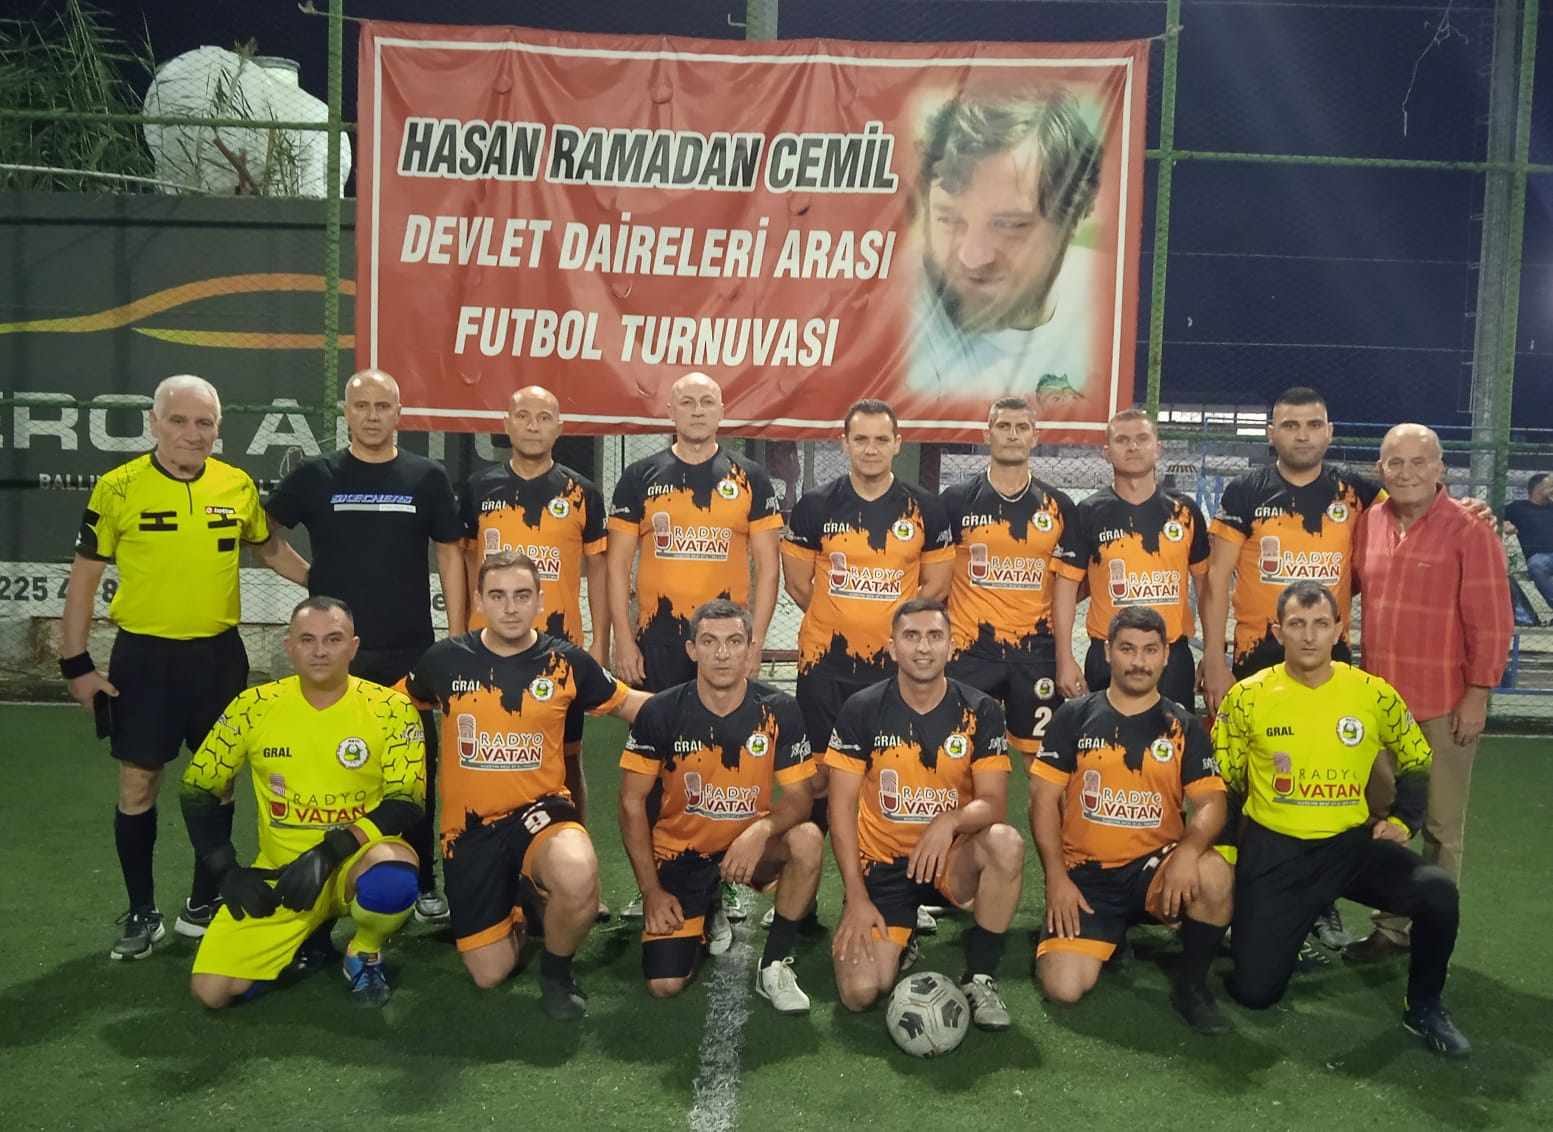 Hasan Ramadan Cemil Devlet Daireleri Arası Futbol Turnuvası’nda;  Yarı Final Zamanı